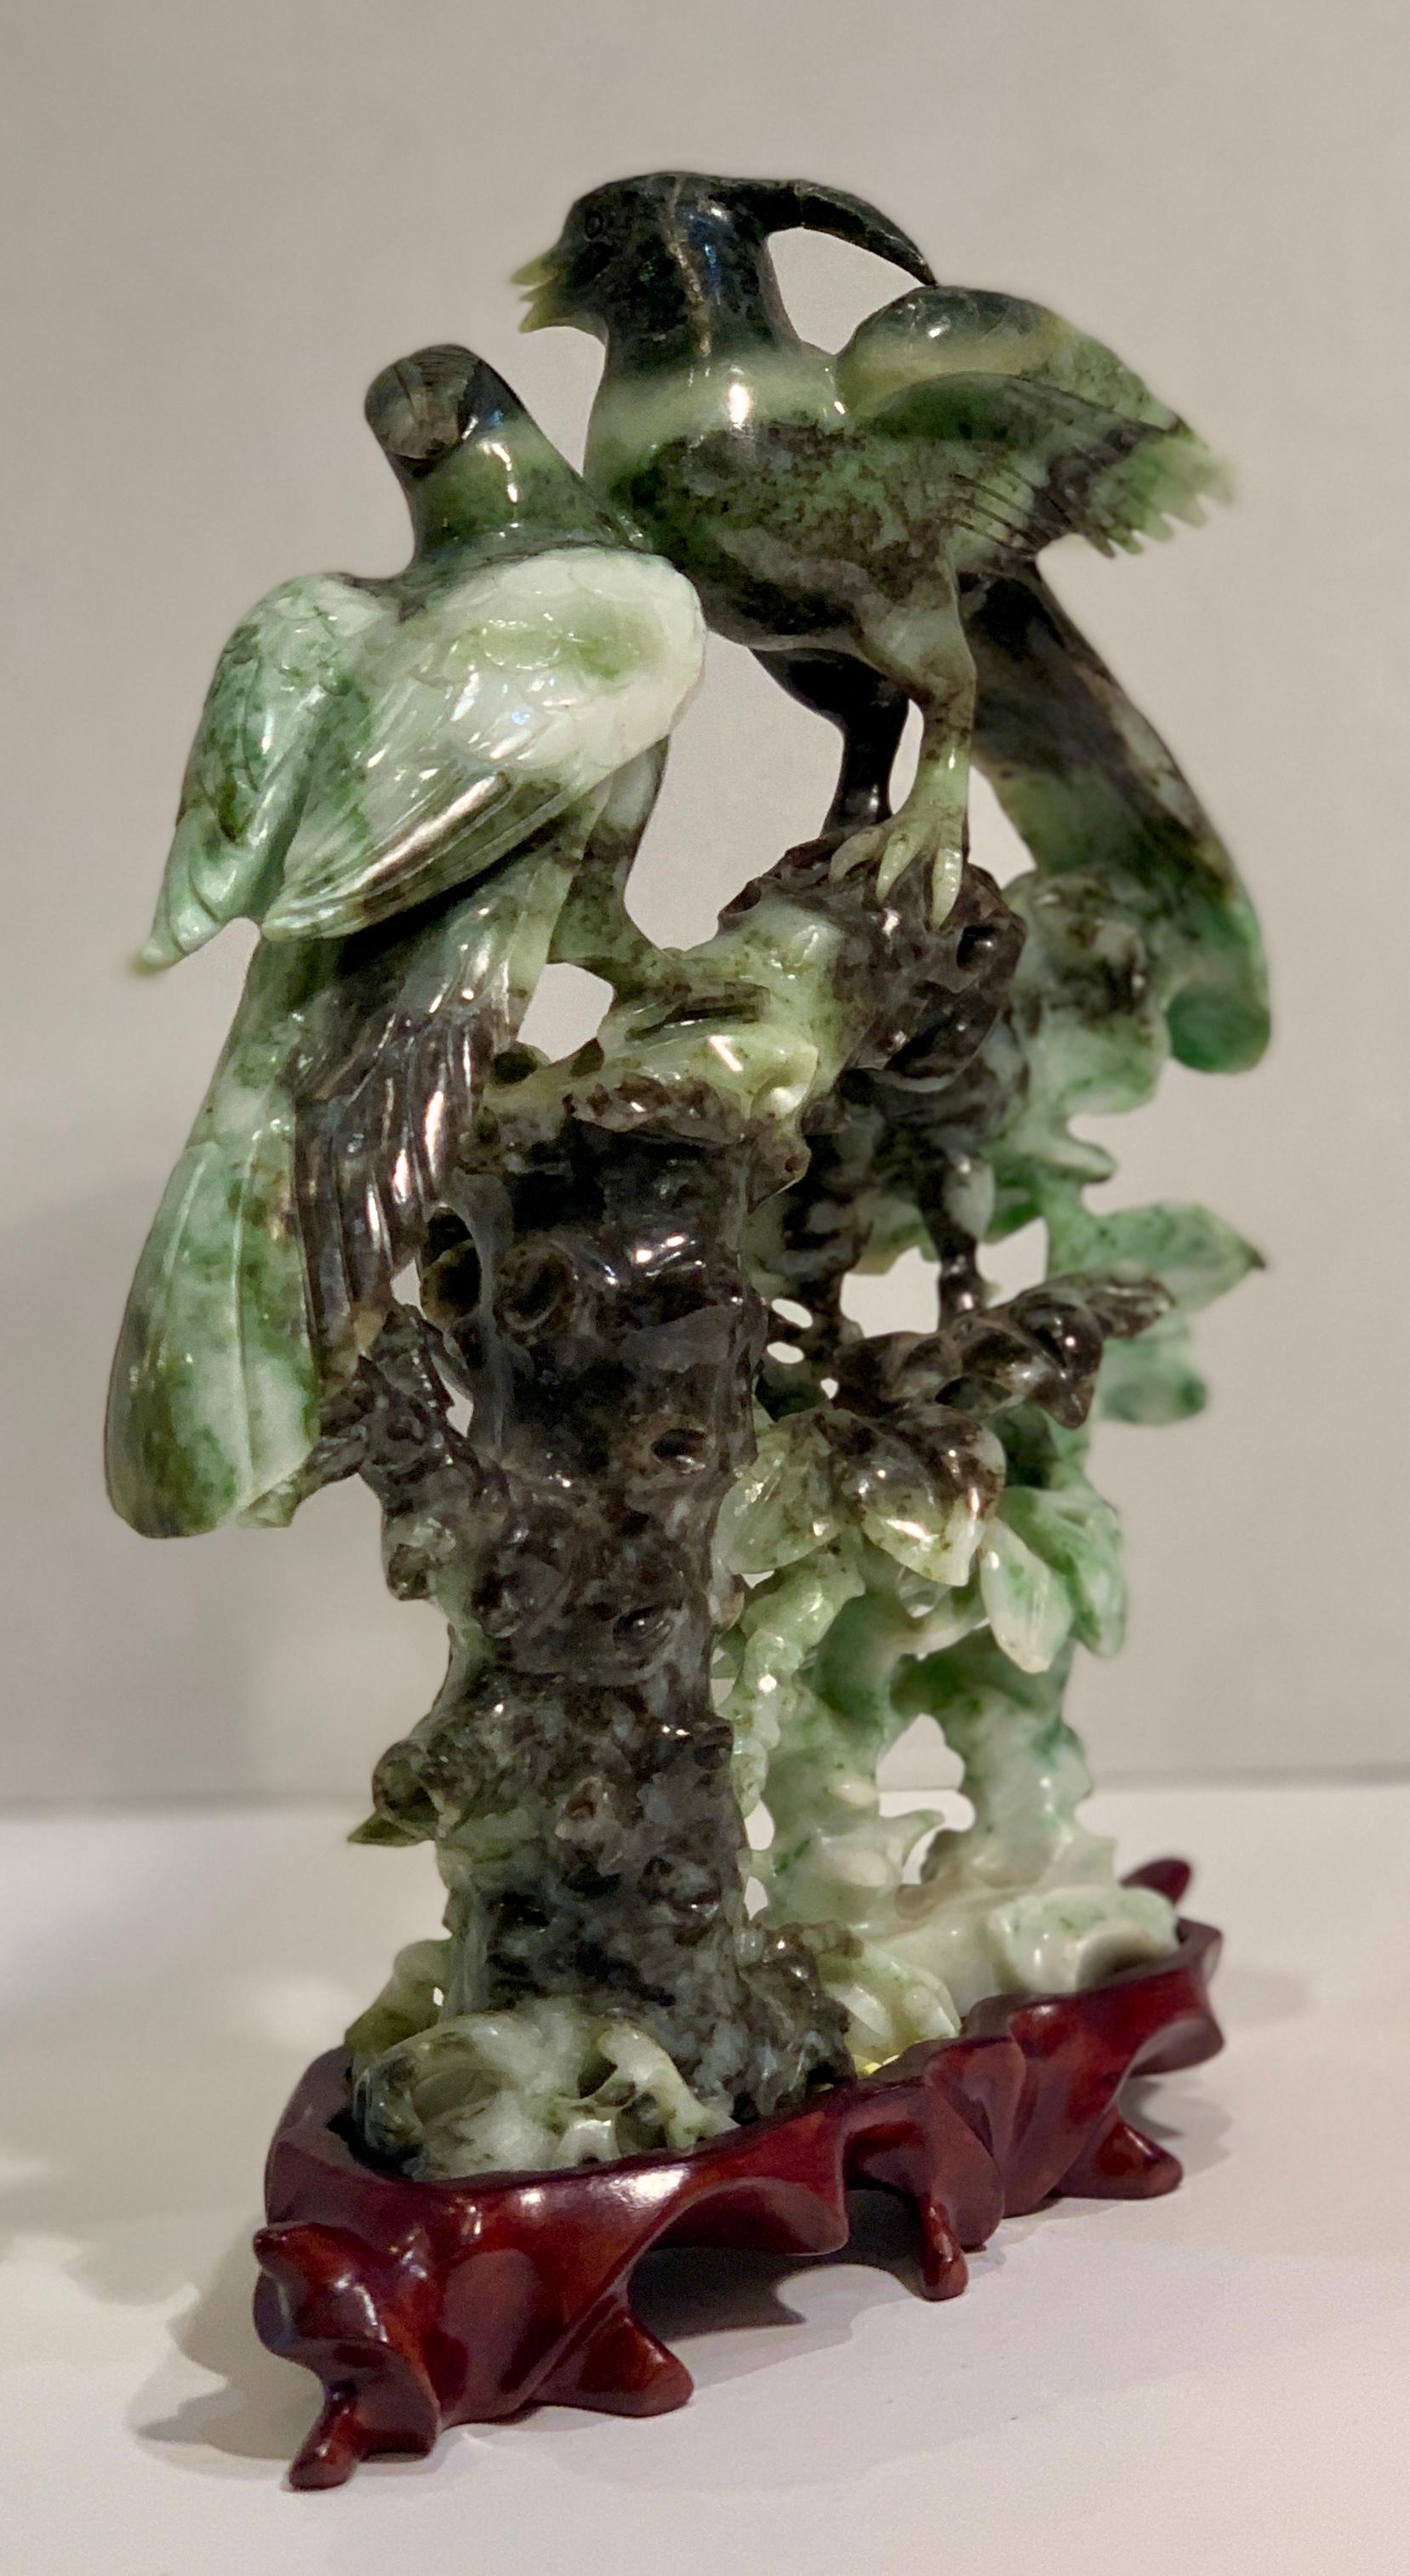 Chinesische geschnitzte Skulptur von Vögeln und Blumen aus gesprenkeltem Stein auf Rosenholzsockel (Chinesischer Export)